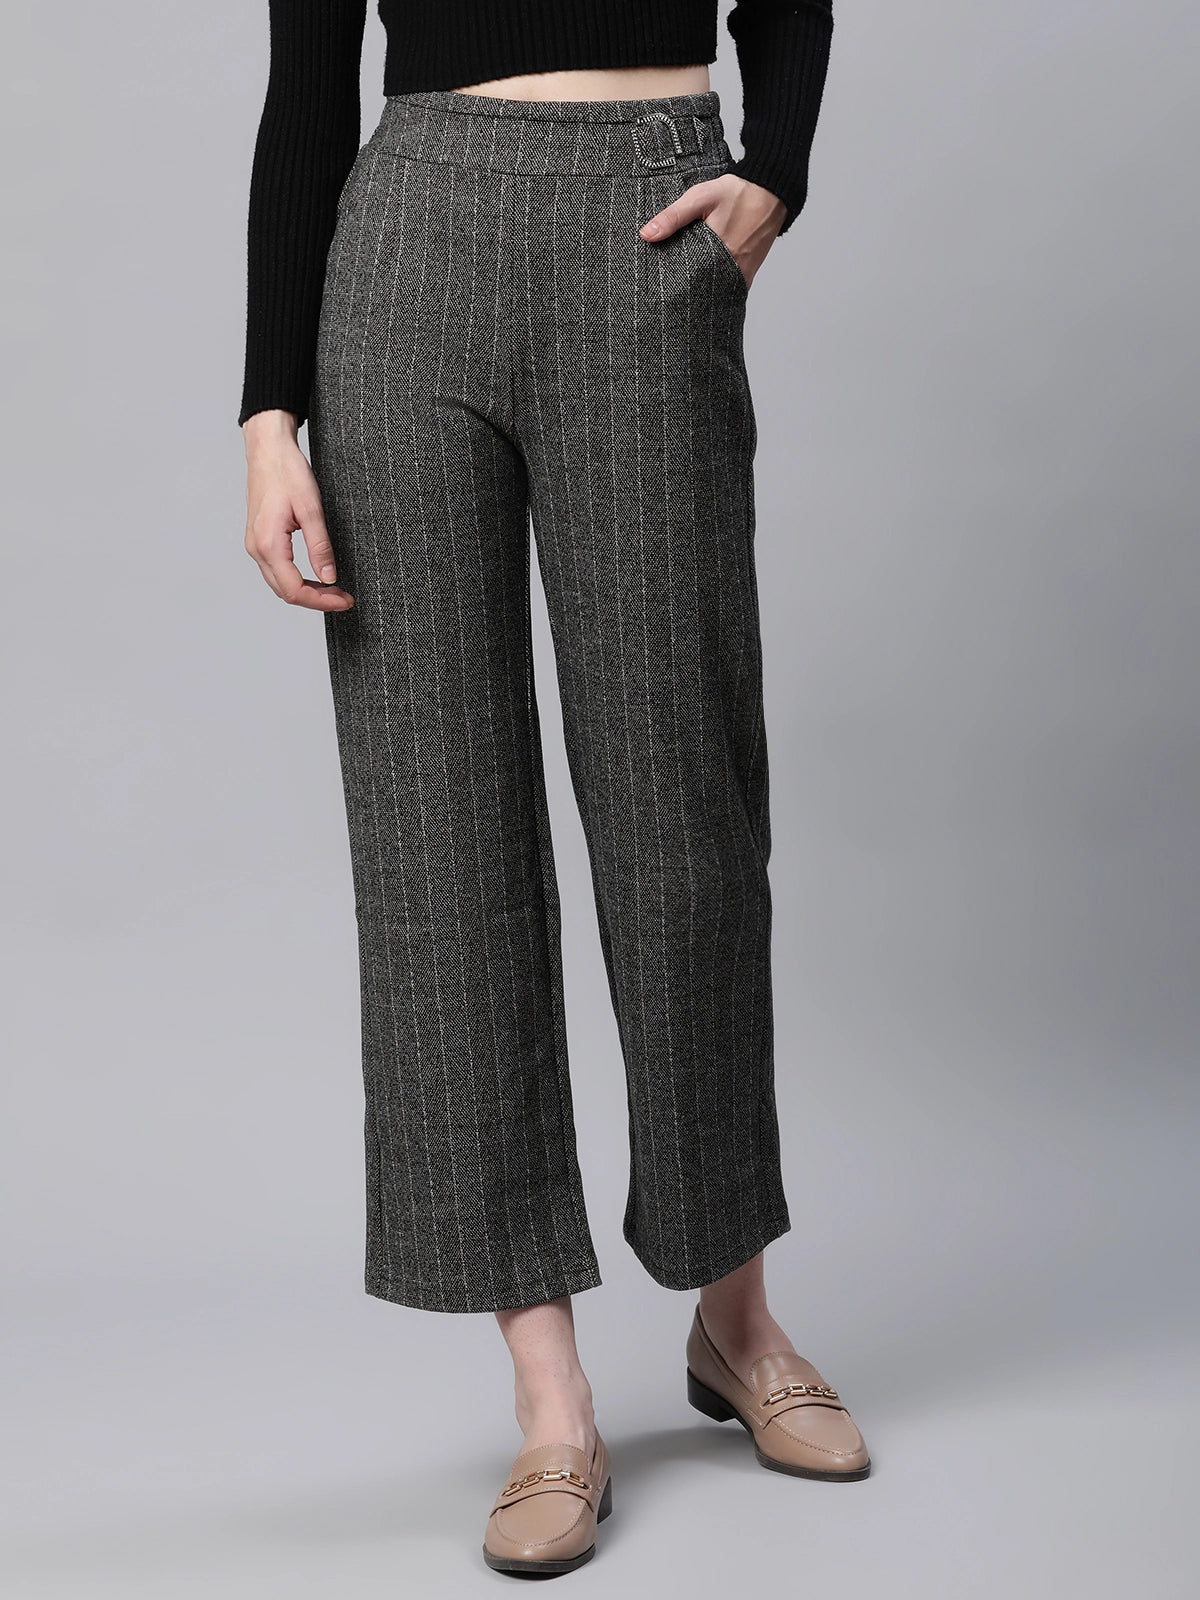 Buy Milumia Women Plaid High Waisted Office Pants Elegant Belted Pocket  Pants Grey Medium at Amazonin